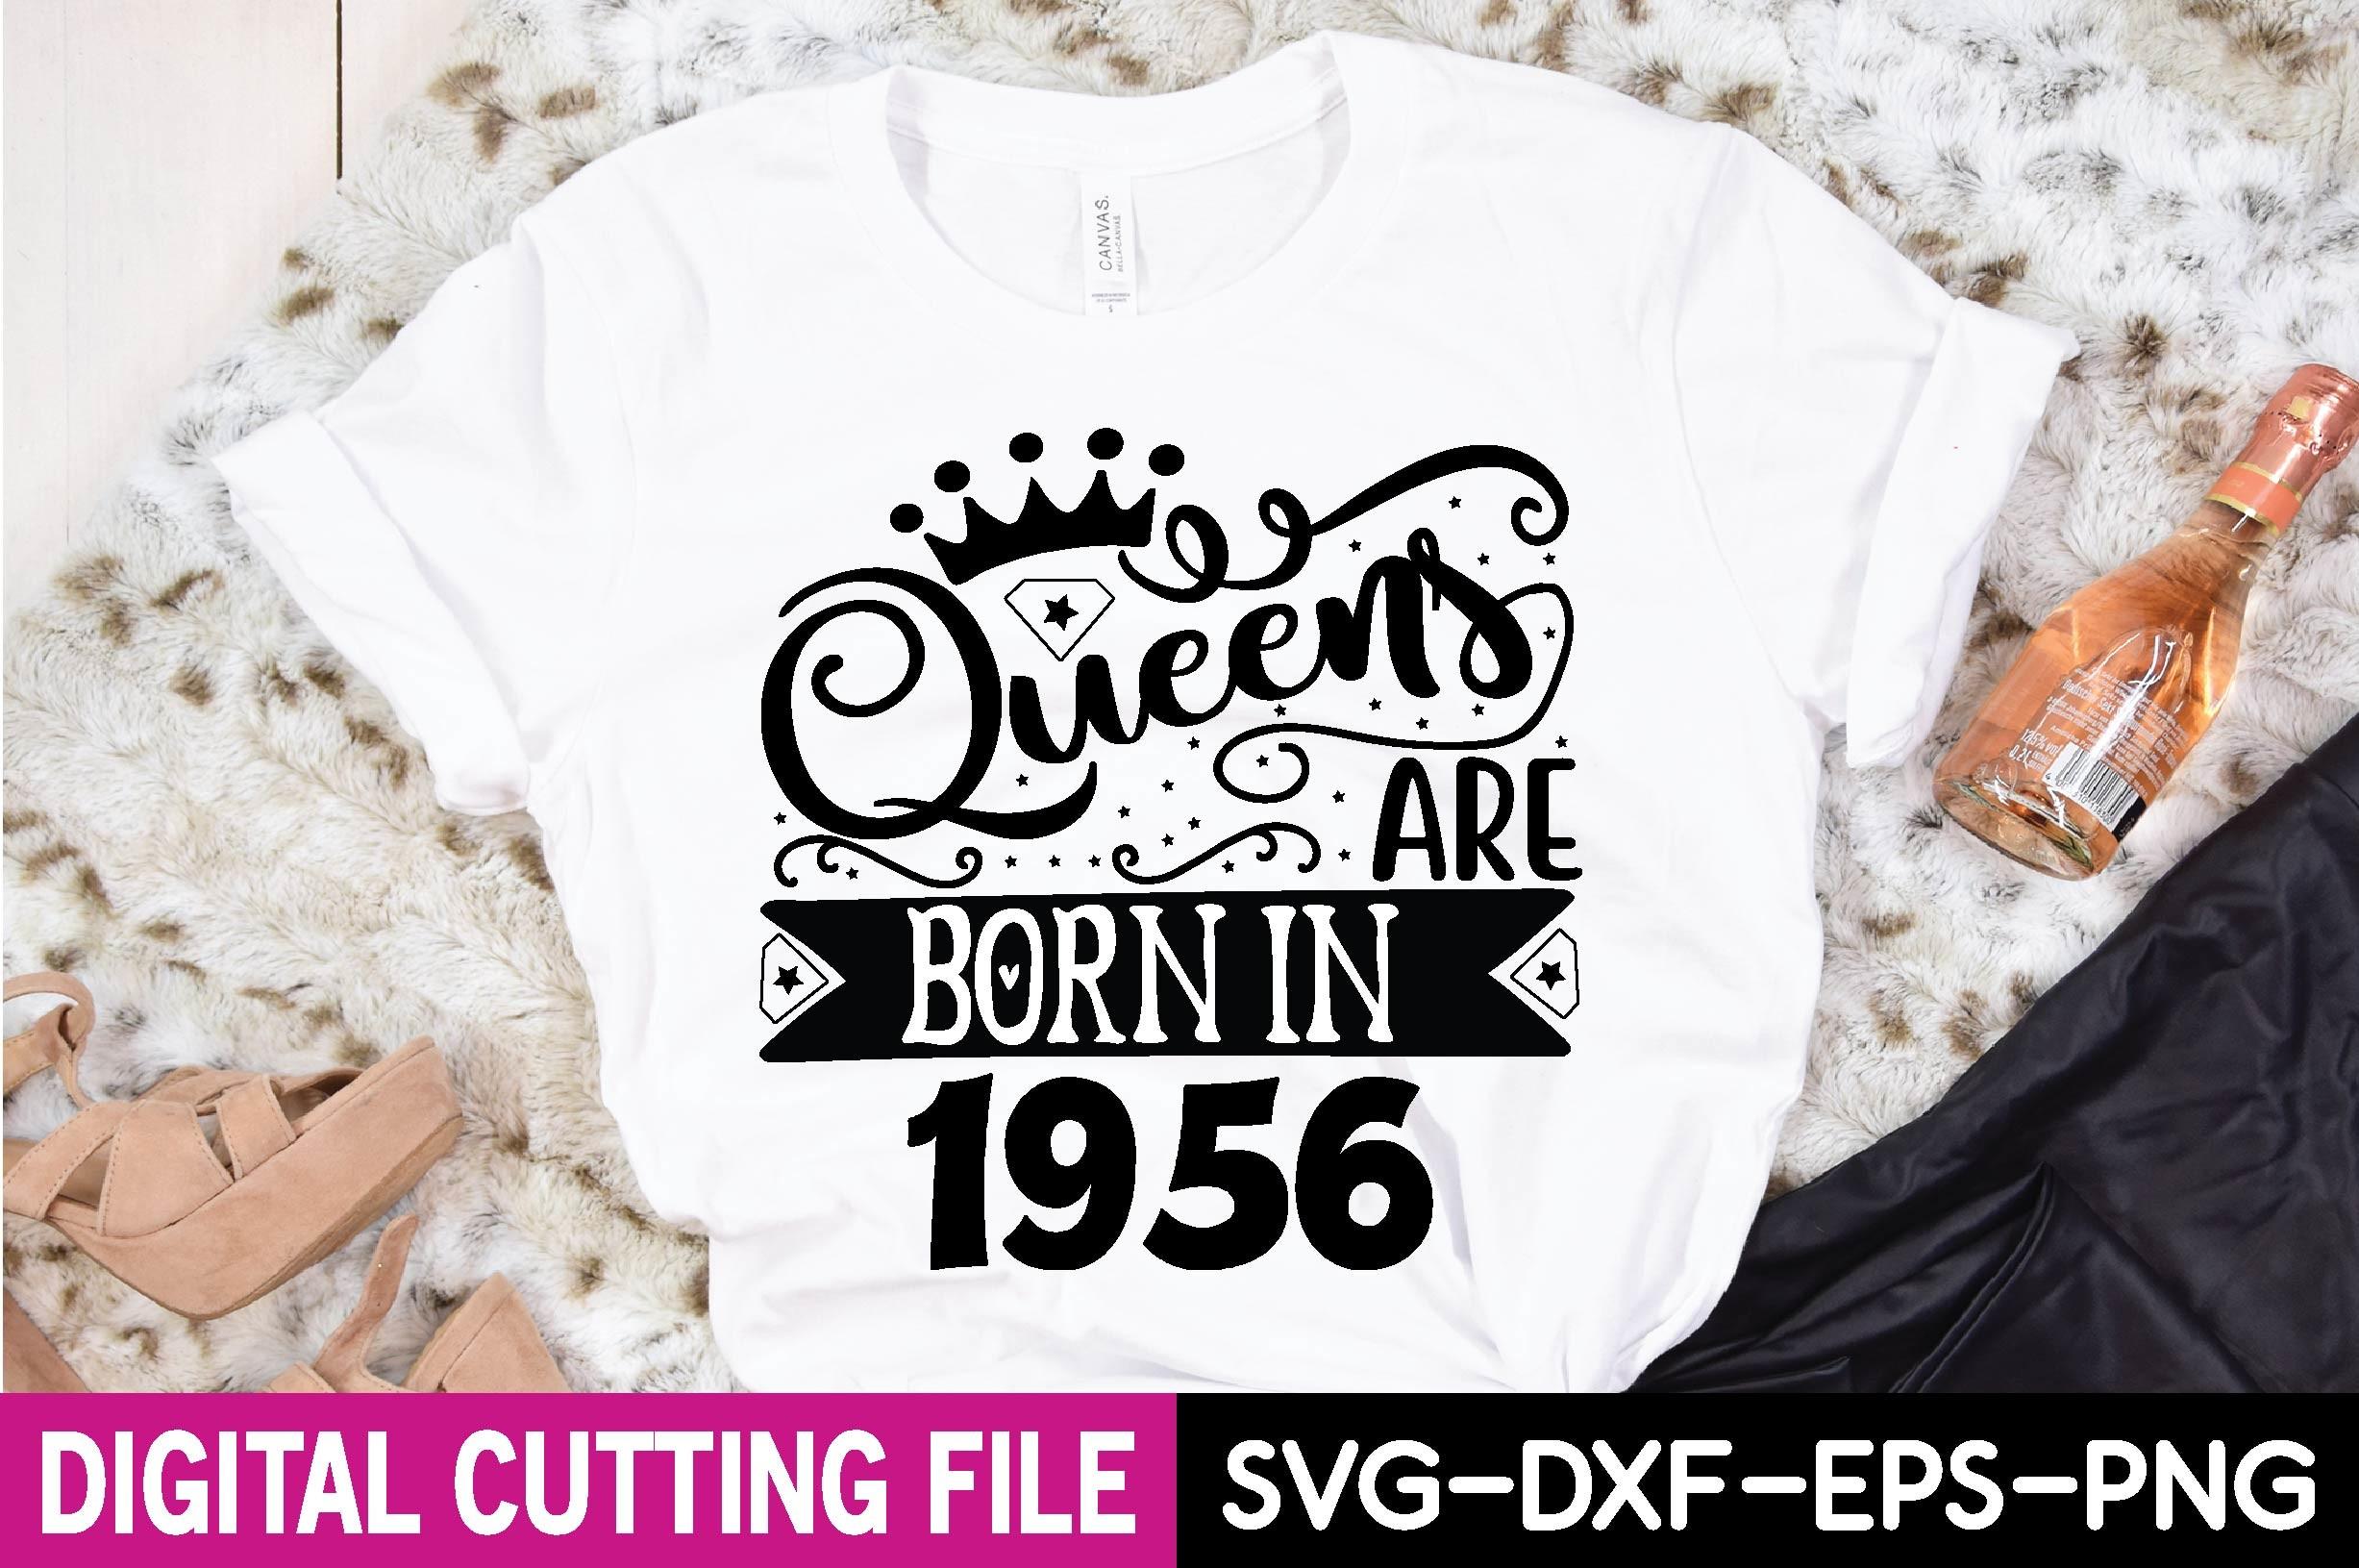 Queens Are Born in 1956